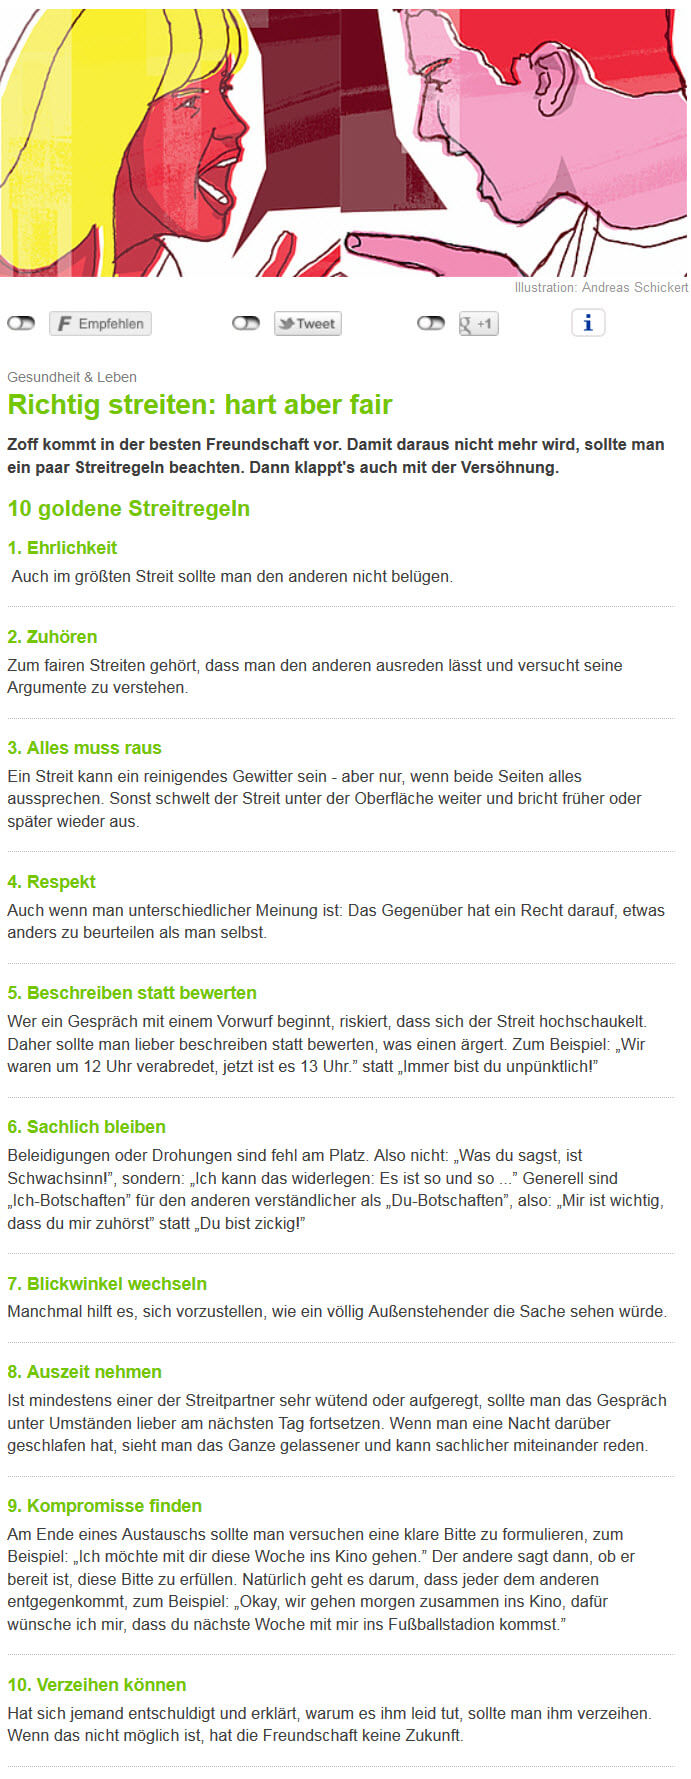 Richtig streiten - hart aber fair | 10 goldene Streitregeln bei AOK-ON (Screenshot aok-on.de/gesundheit-leben/streiten-hart-aber-fair.html am 05.01.2017)